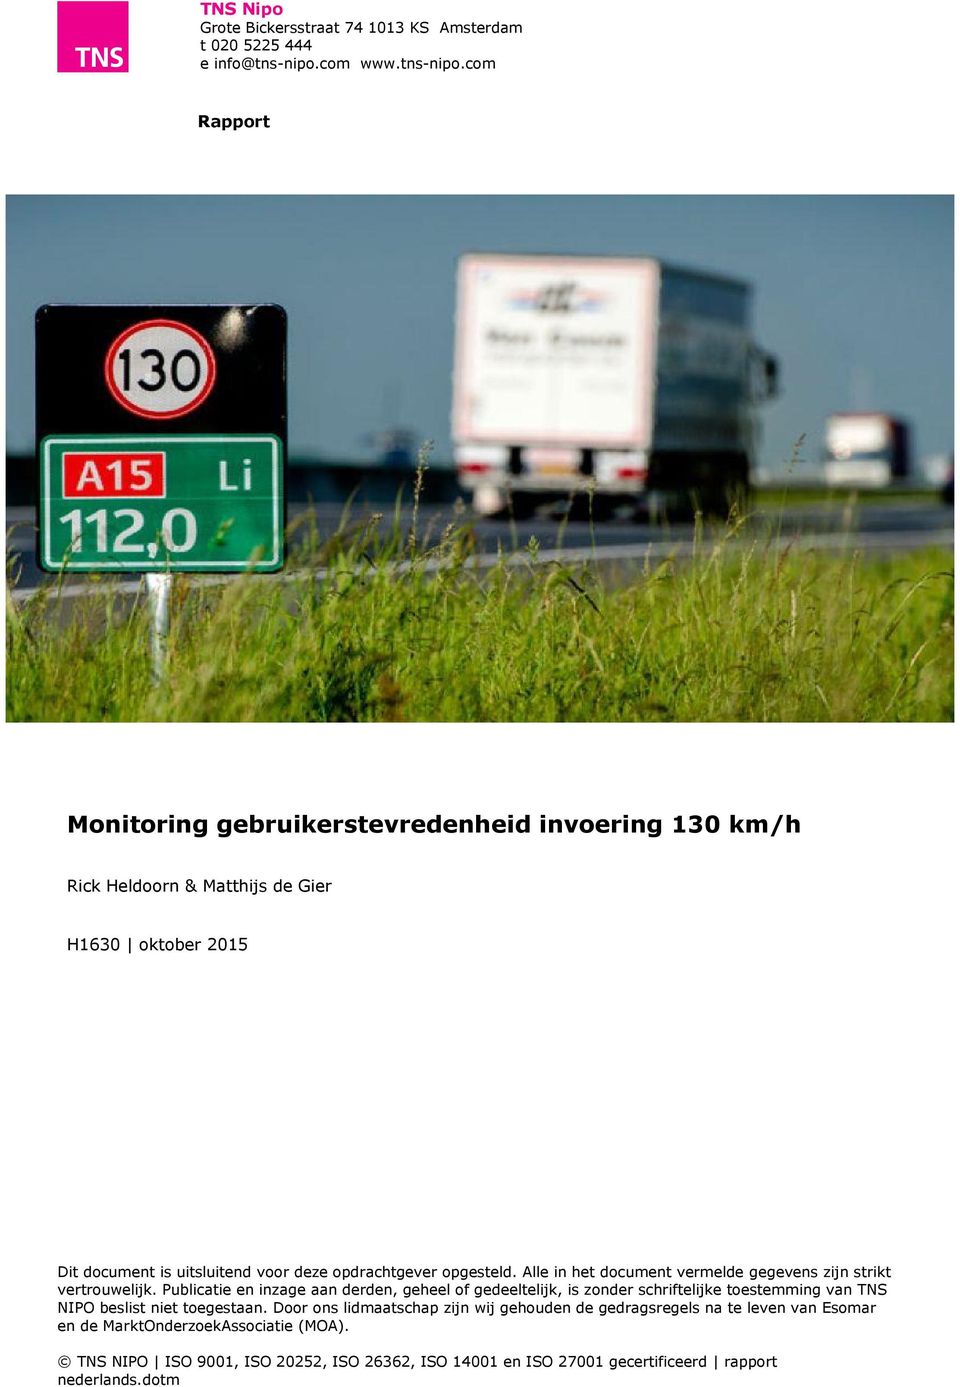 com Rapport Monitoring gebruikerstevredenheid invoering 130 km/h Rick Heldoorn & Matthijs de Gier H1630 oktober 2015 Dit document is uitsluitend voor deze opdrachtgever